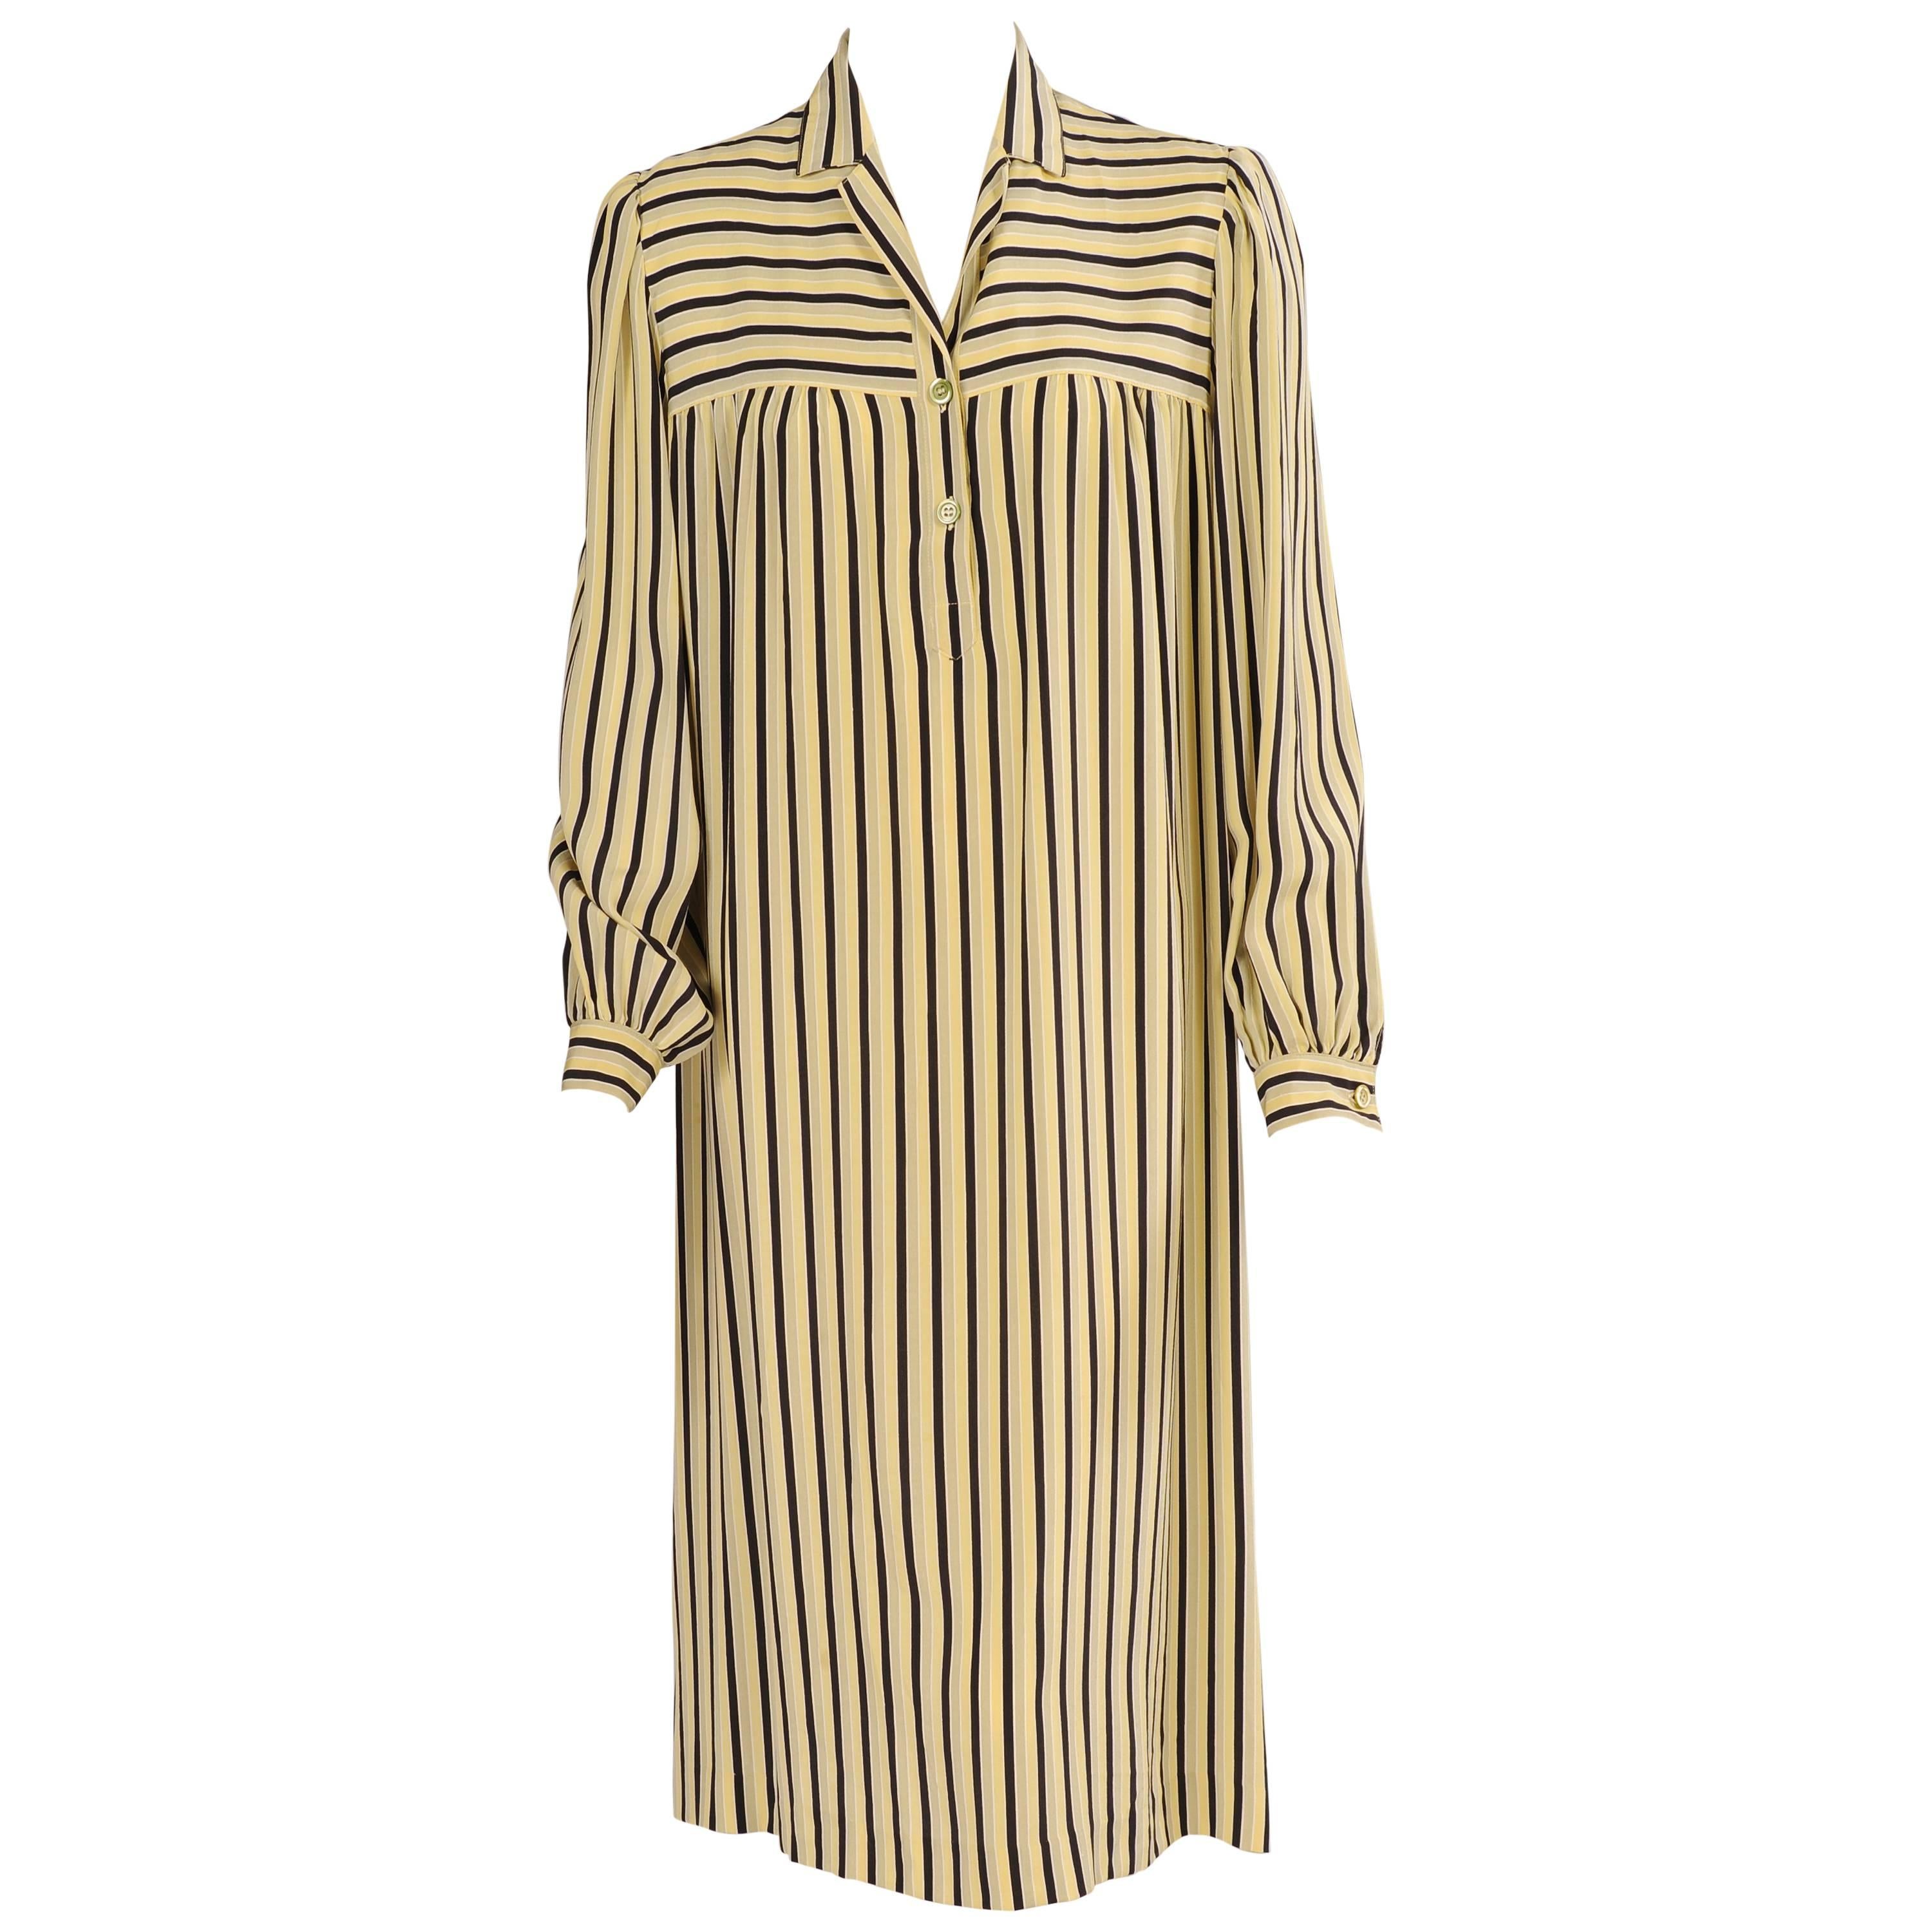 Guy Laroche 1970's Striped Silk Dress